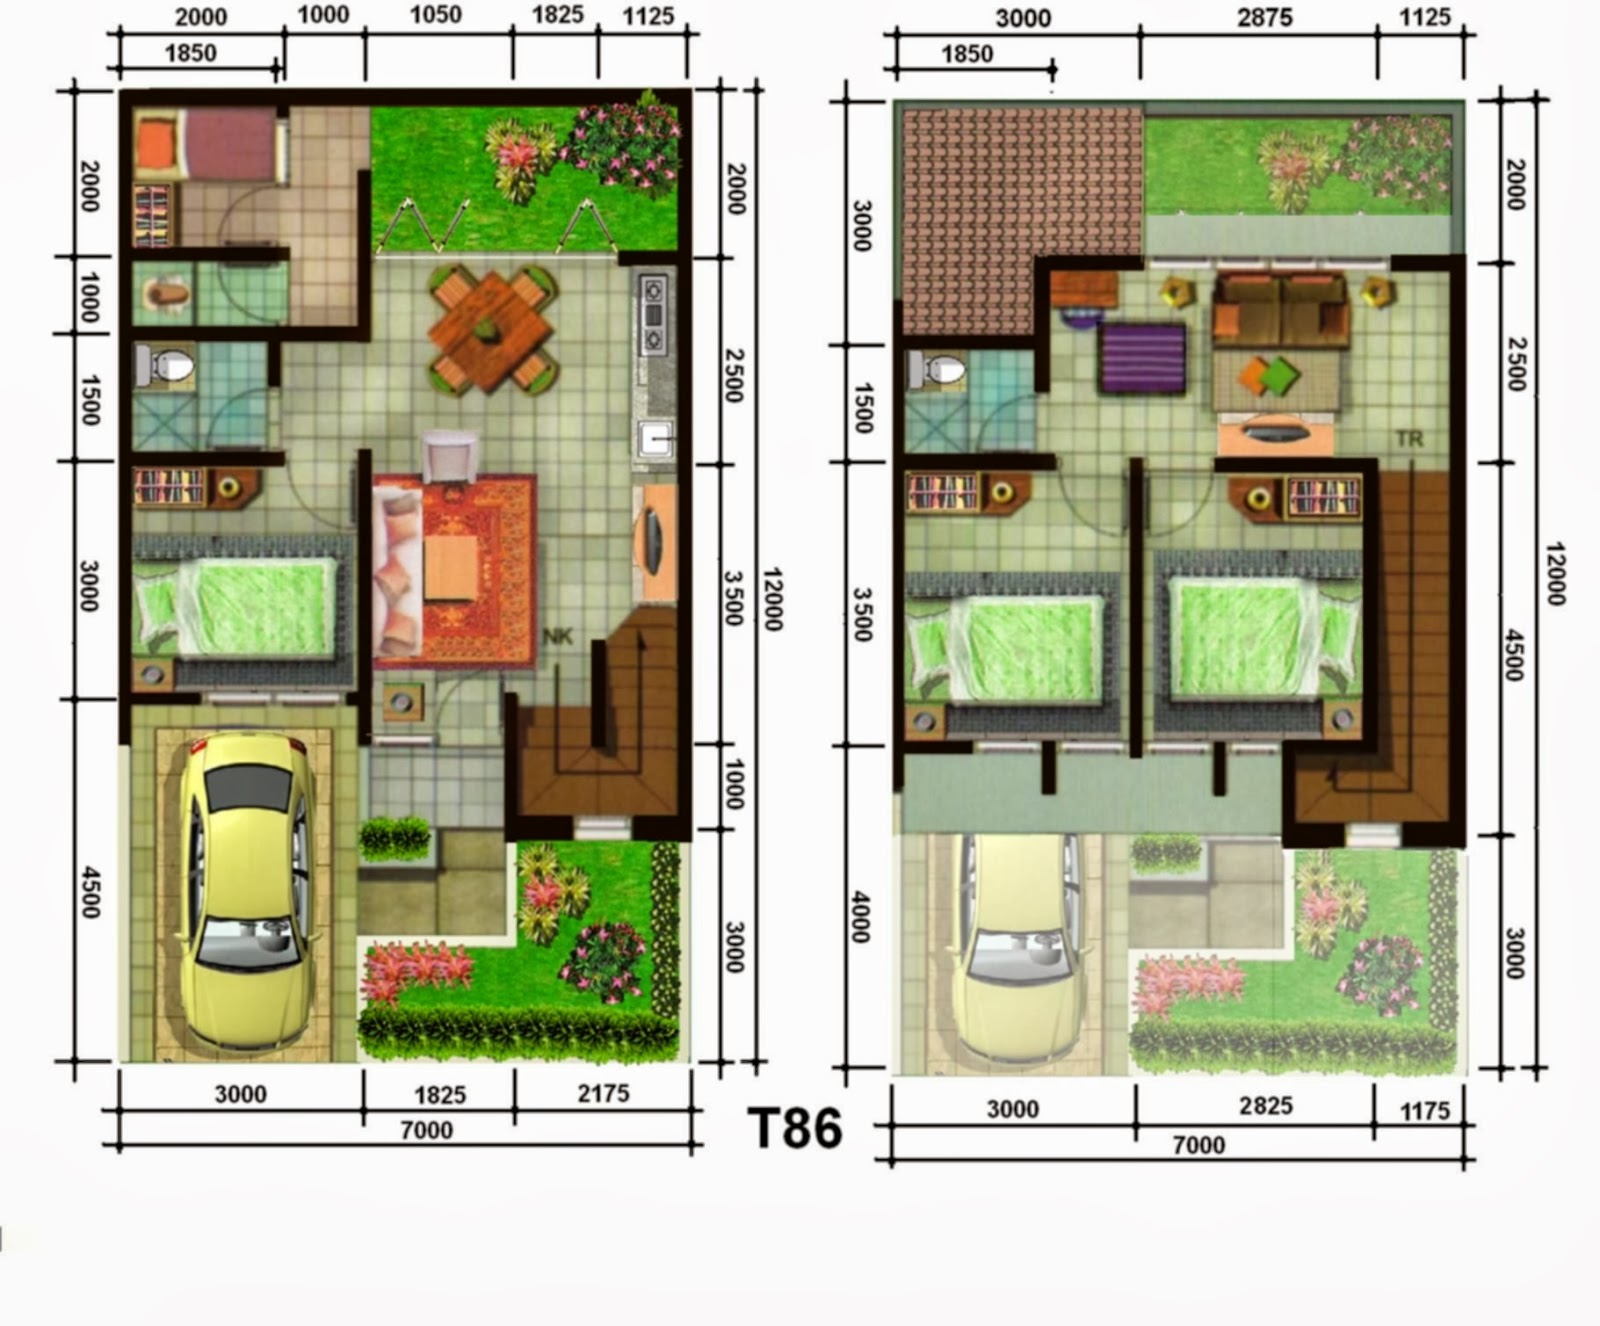 Home Design Interior Singapore Rab Rumah 2 Lantai Minimalis Rumah